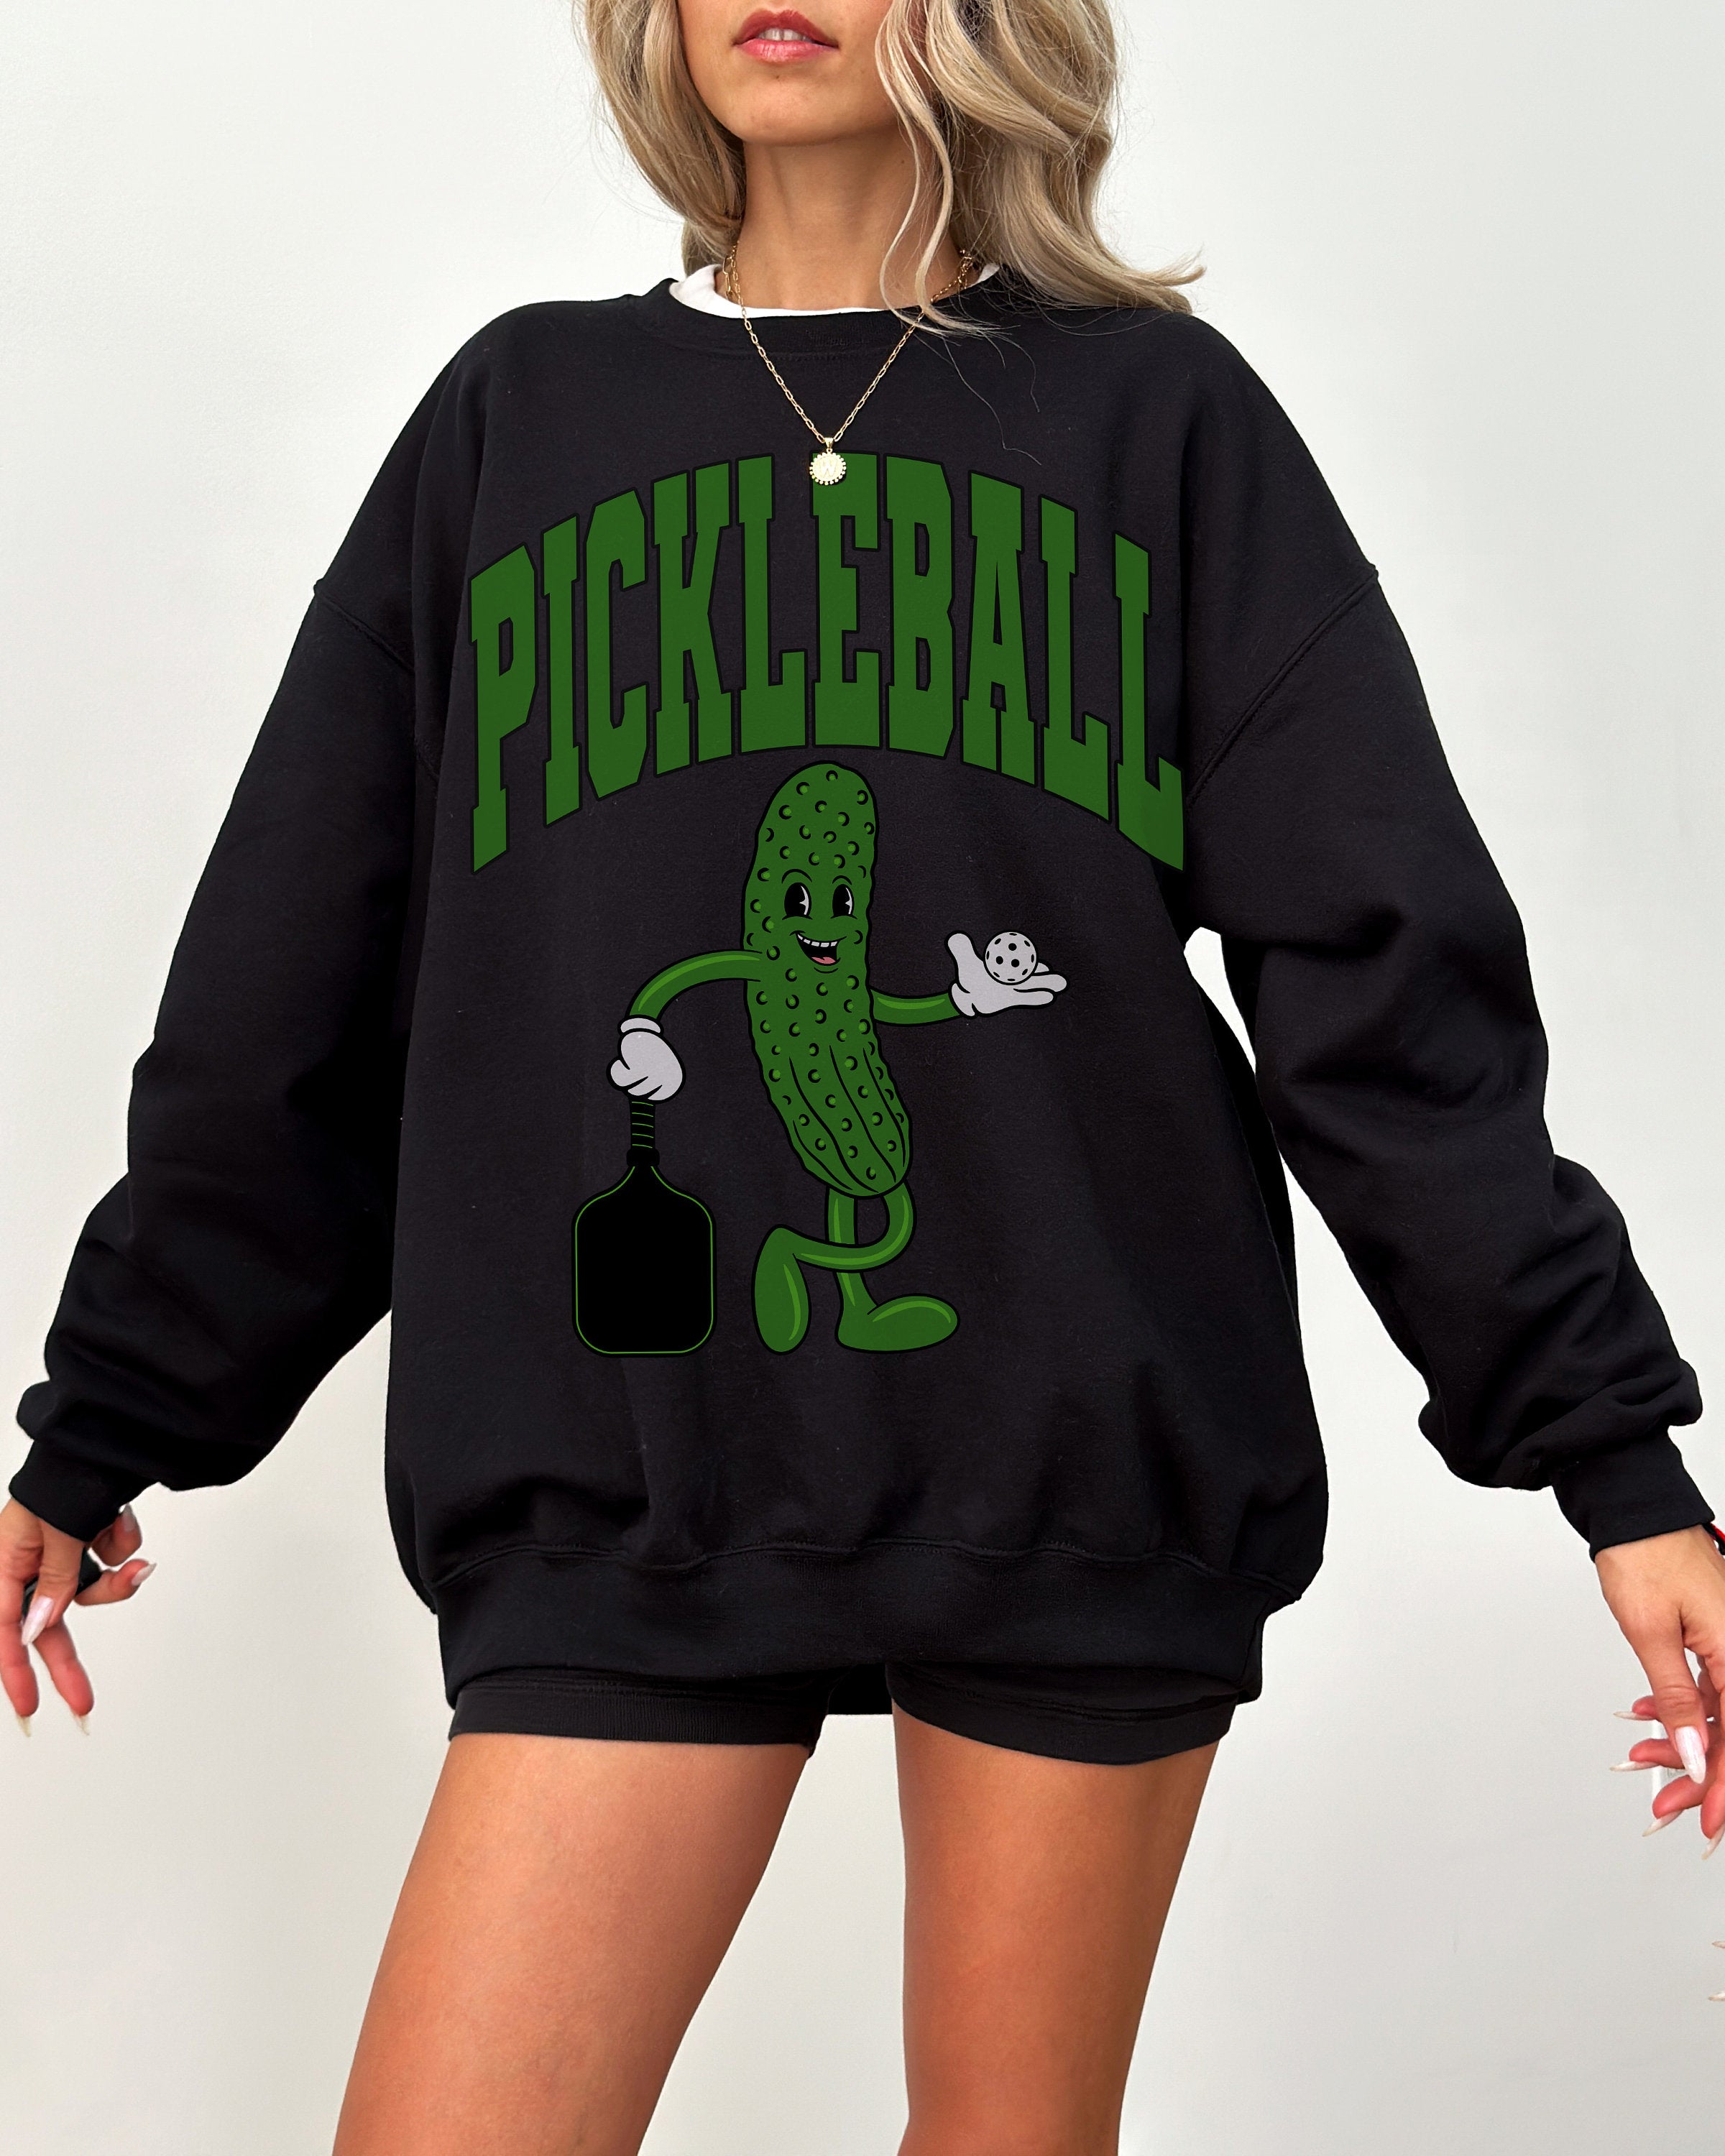 Retro Pickleball Crewneck, Vintage Pickleball Crew, Funny Sports TShirt, Pickleball Sweatshirt, Pickleball Player, Pickleball Season,Pickler